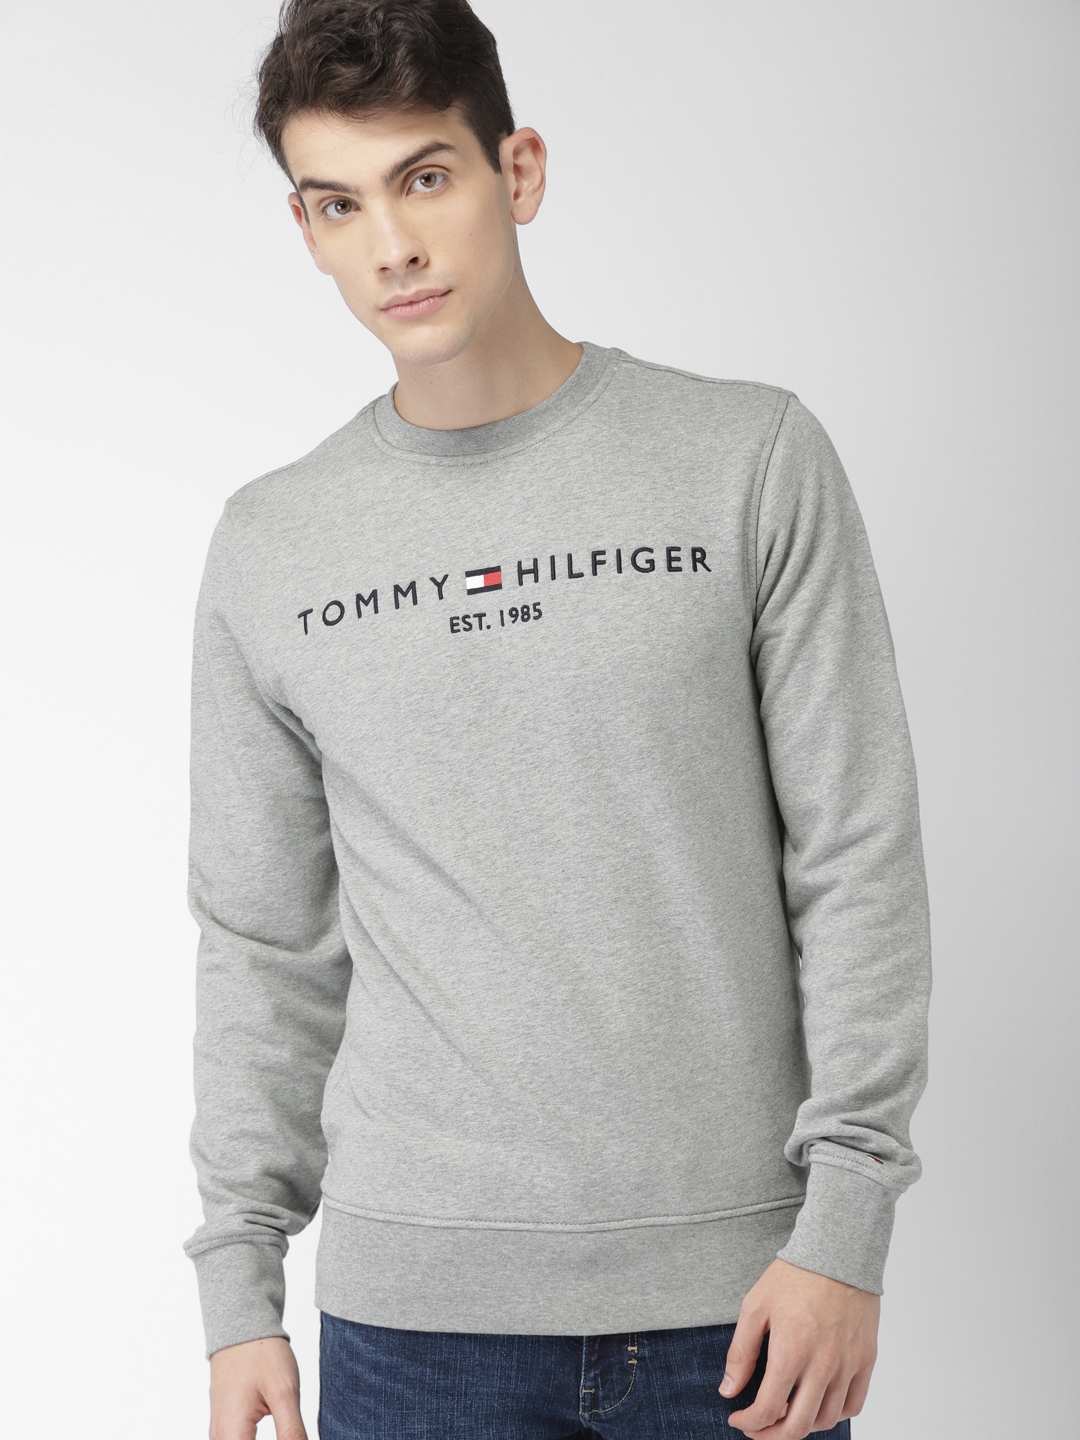 tommy hilfiger mens grey sweatshirt